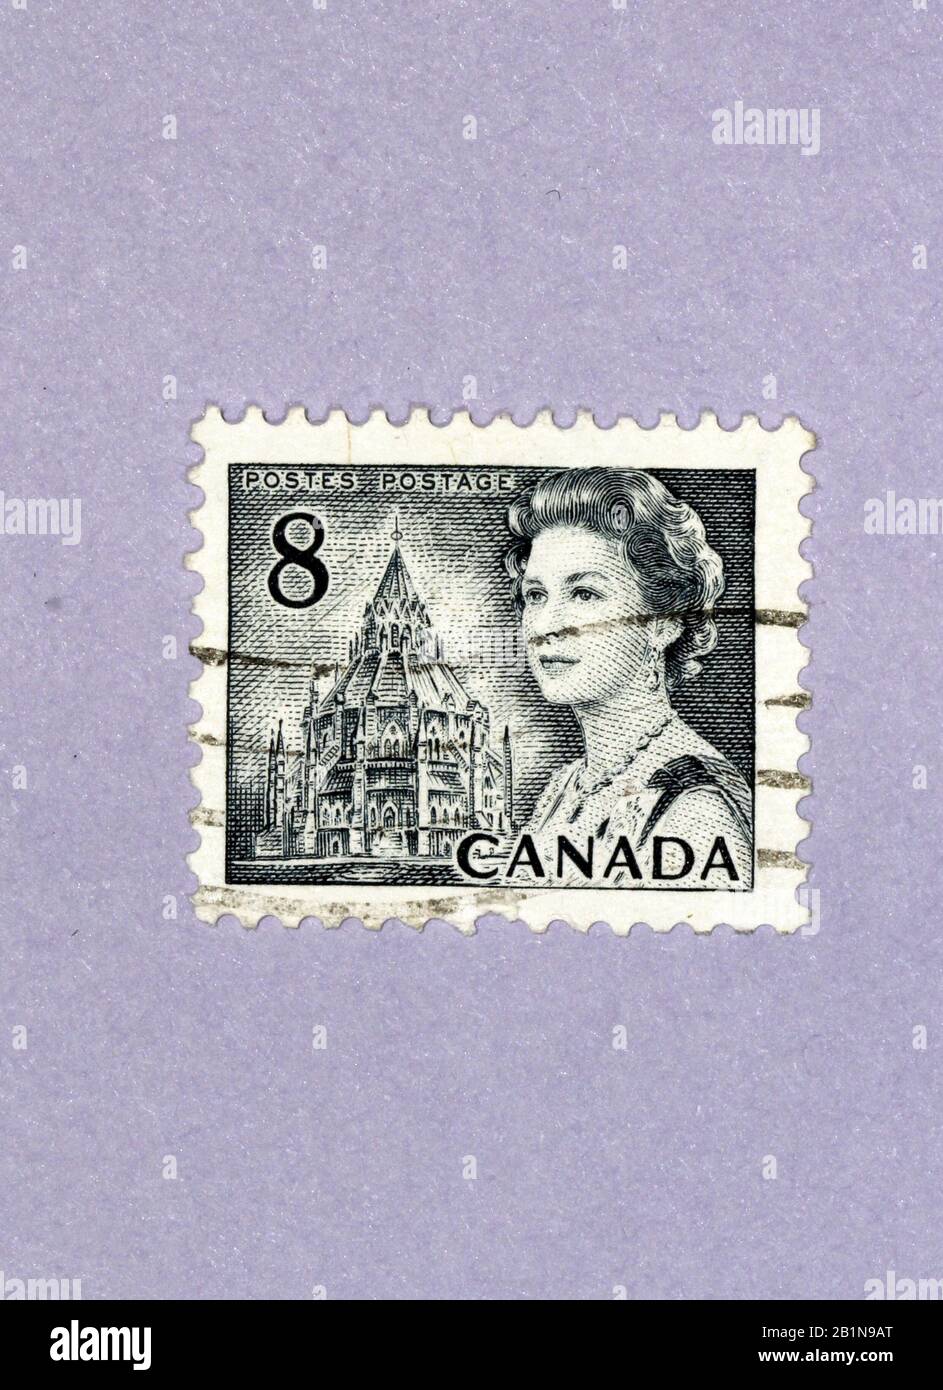 Queen Elizabeth II Canada stamp Stock Photo